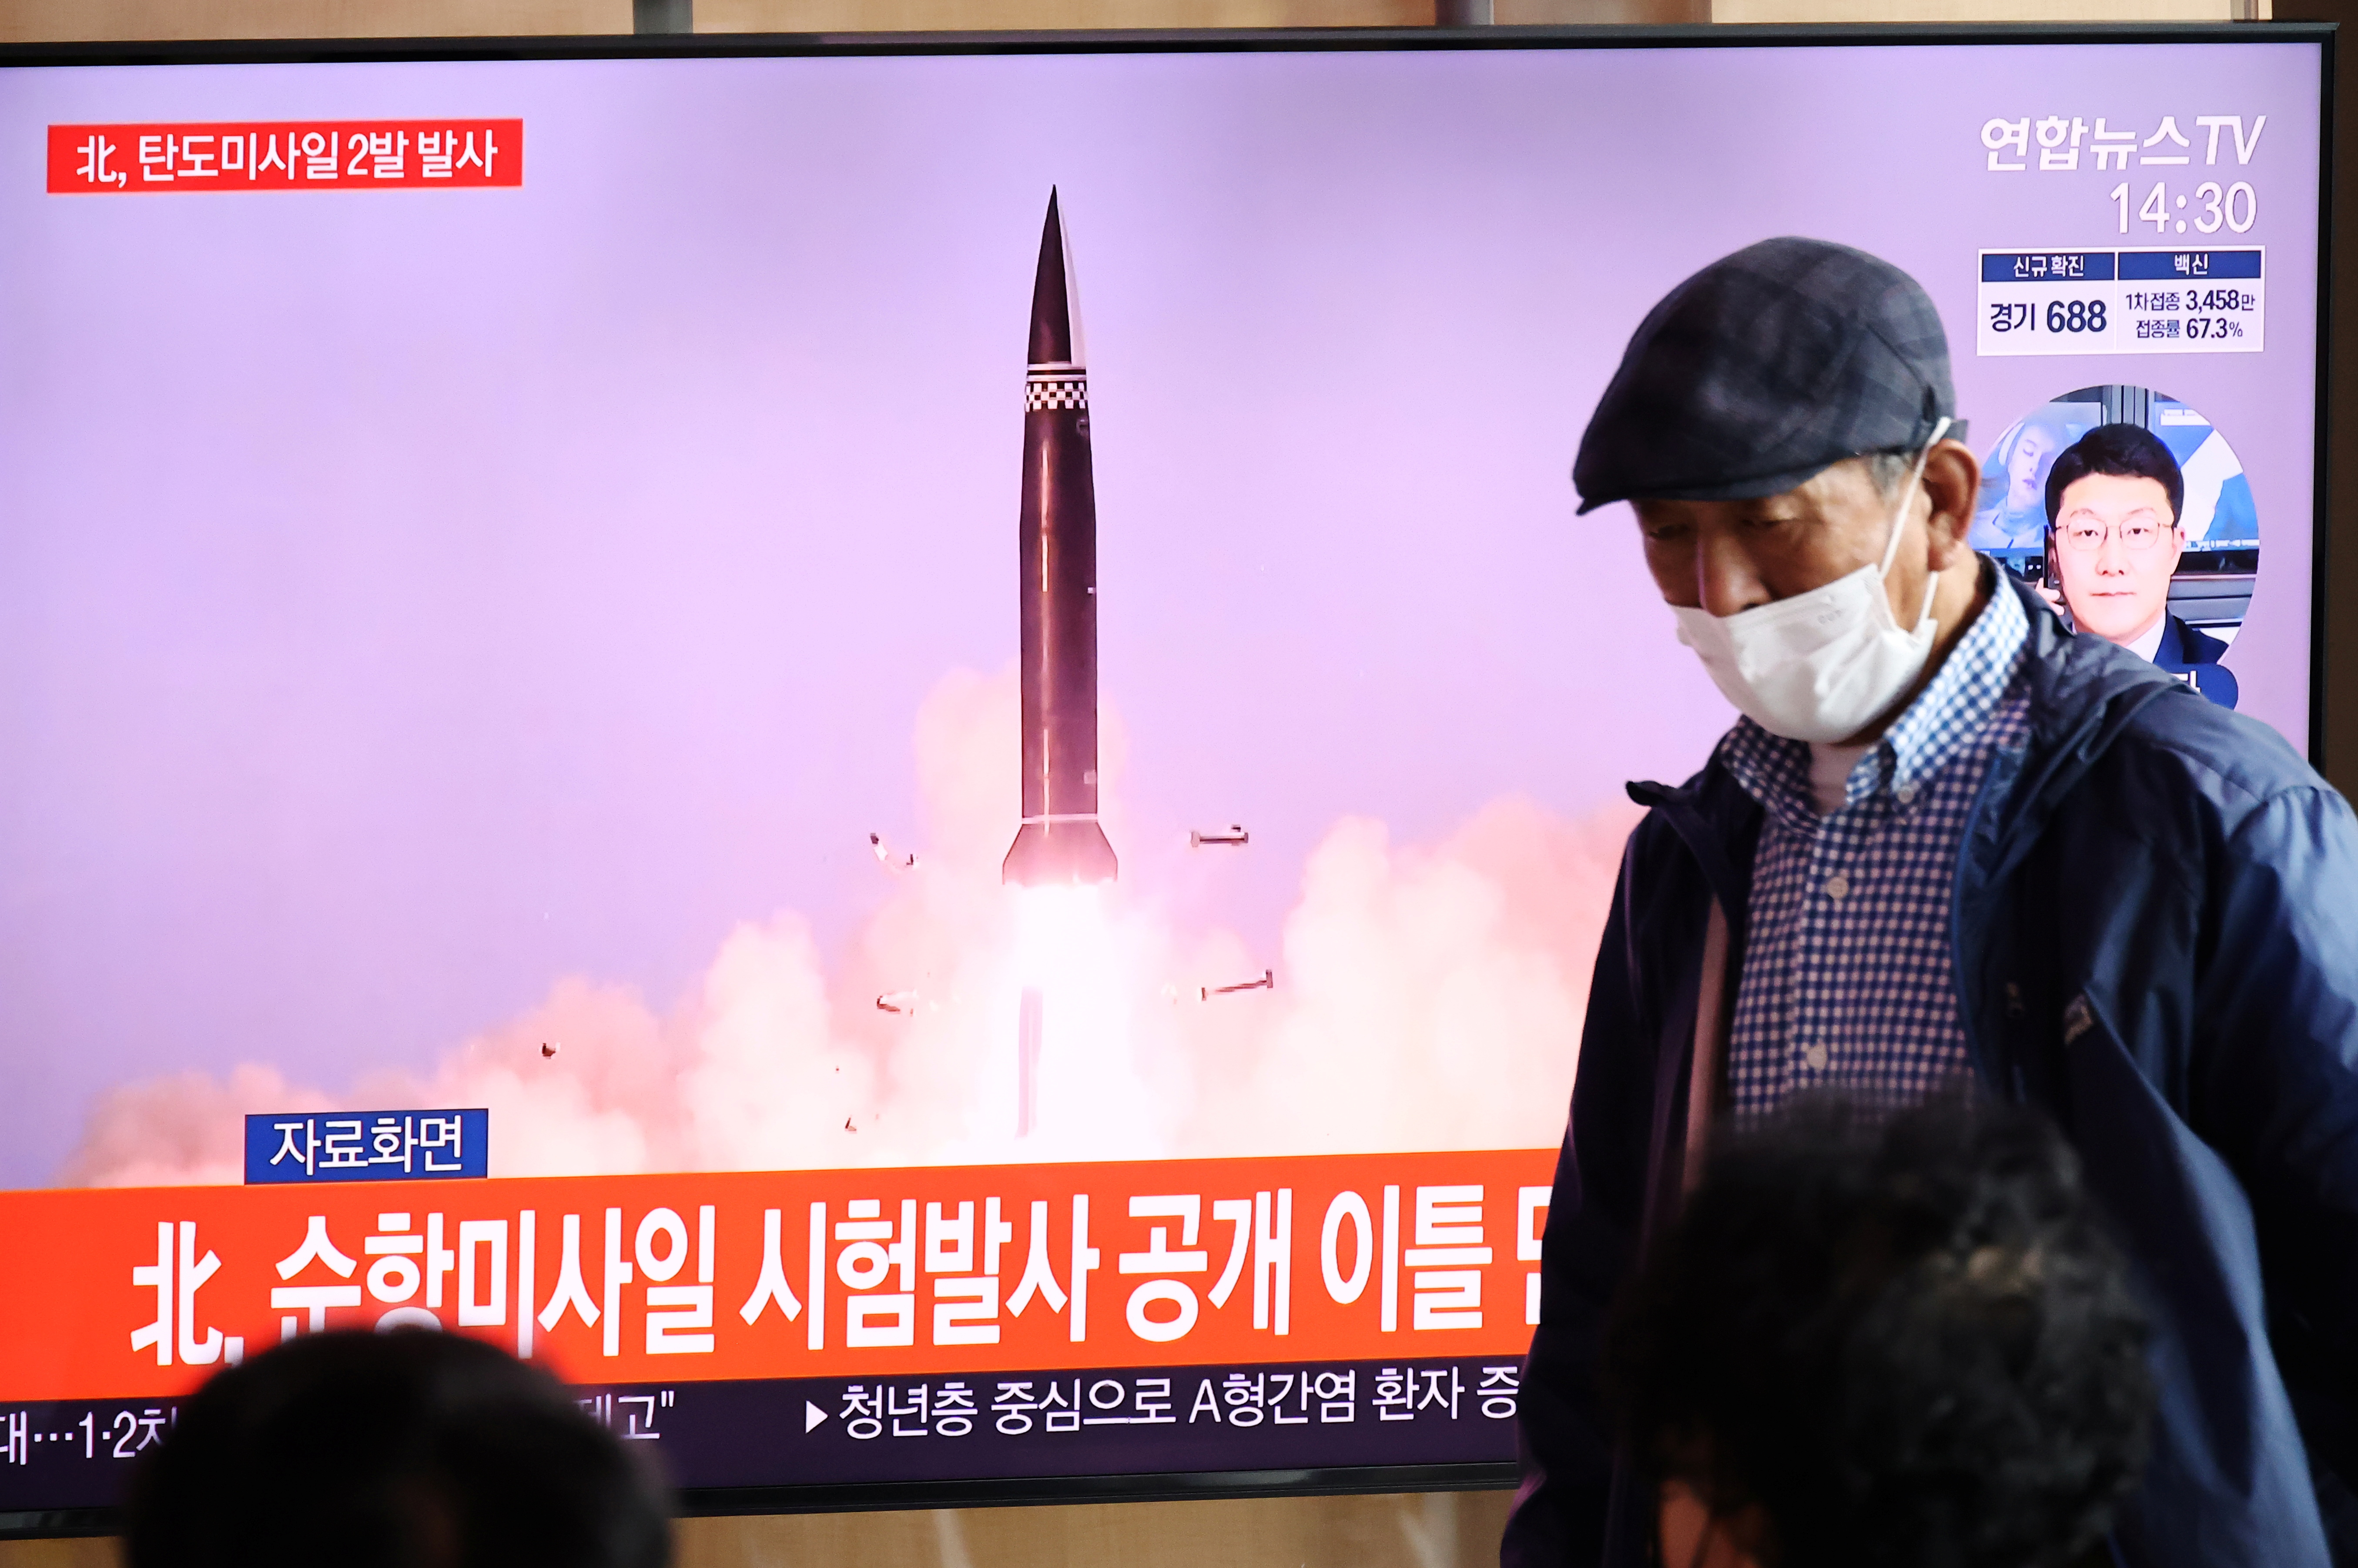 Orang-orang menonton rekaman file siaran TV dari laporan berita tentang Korea Utara yang menembakkan apa yang tampak seperti sepasang rudal balistik di lepas pantai timurnya, di Seoul, Korea Selatan, 15 September 2021. REUTERS/Kim Hong-Ji